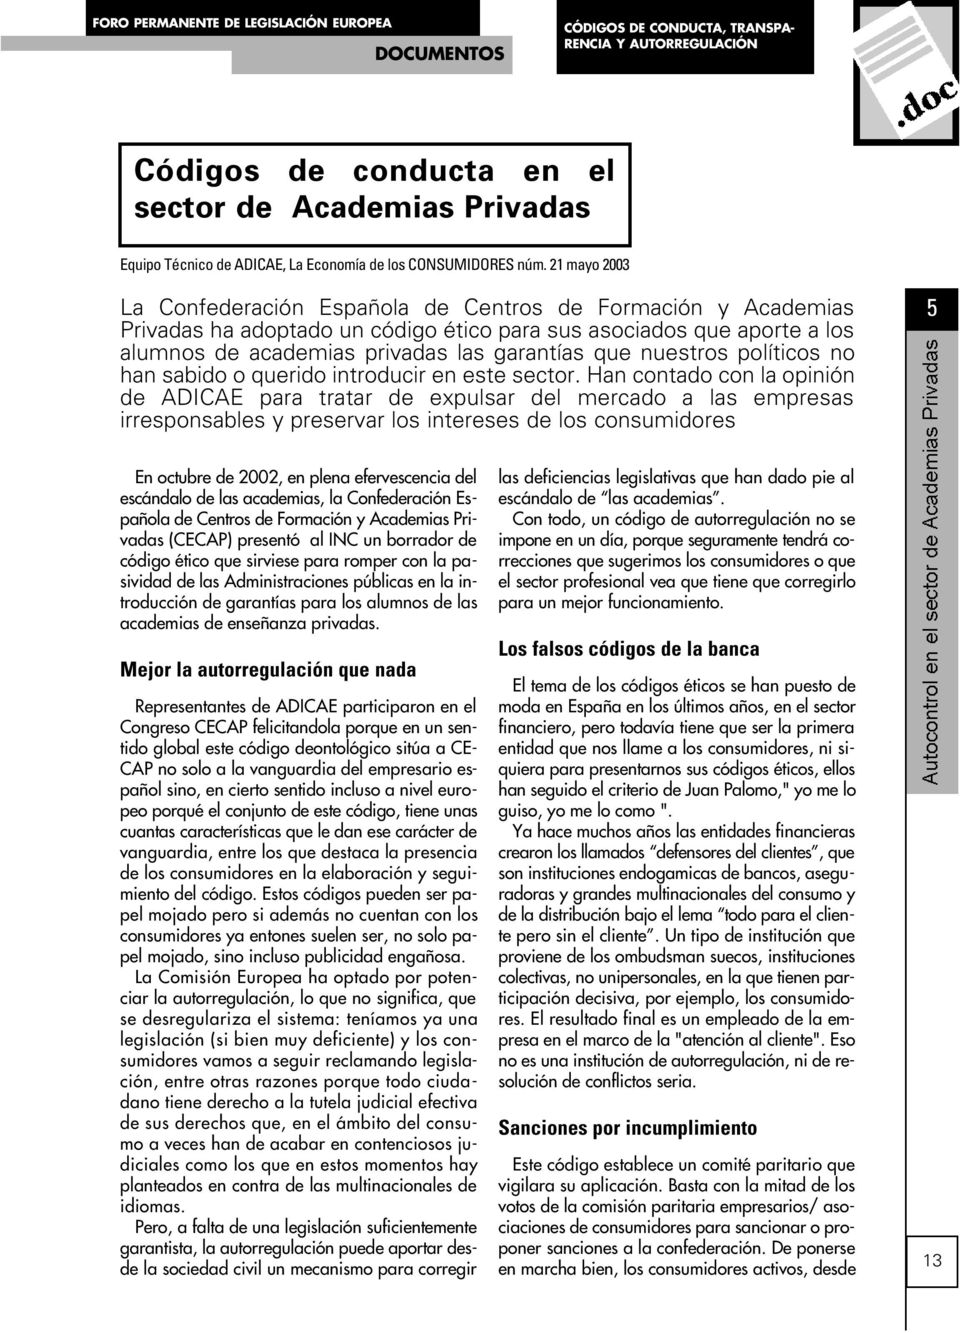 21 mayo 2003 La Confederación Española de Centros de Formación y Academias Privadas ha adoptado un código ético para sus asociados que aporte a los alumnos de academias privadas las garantías que